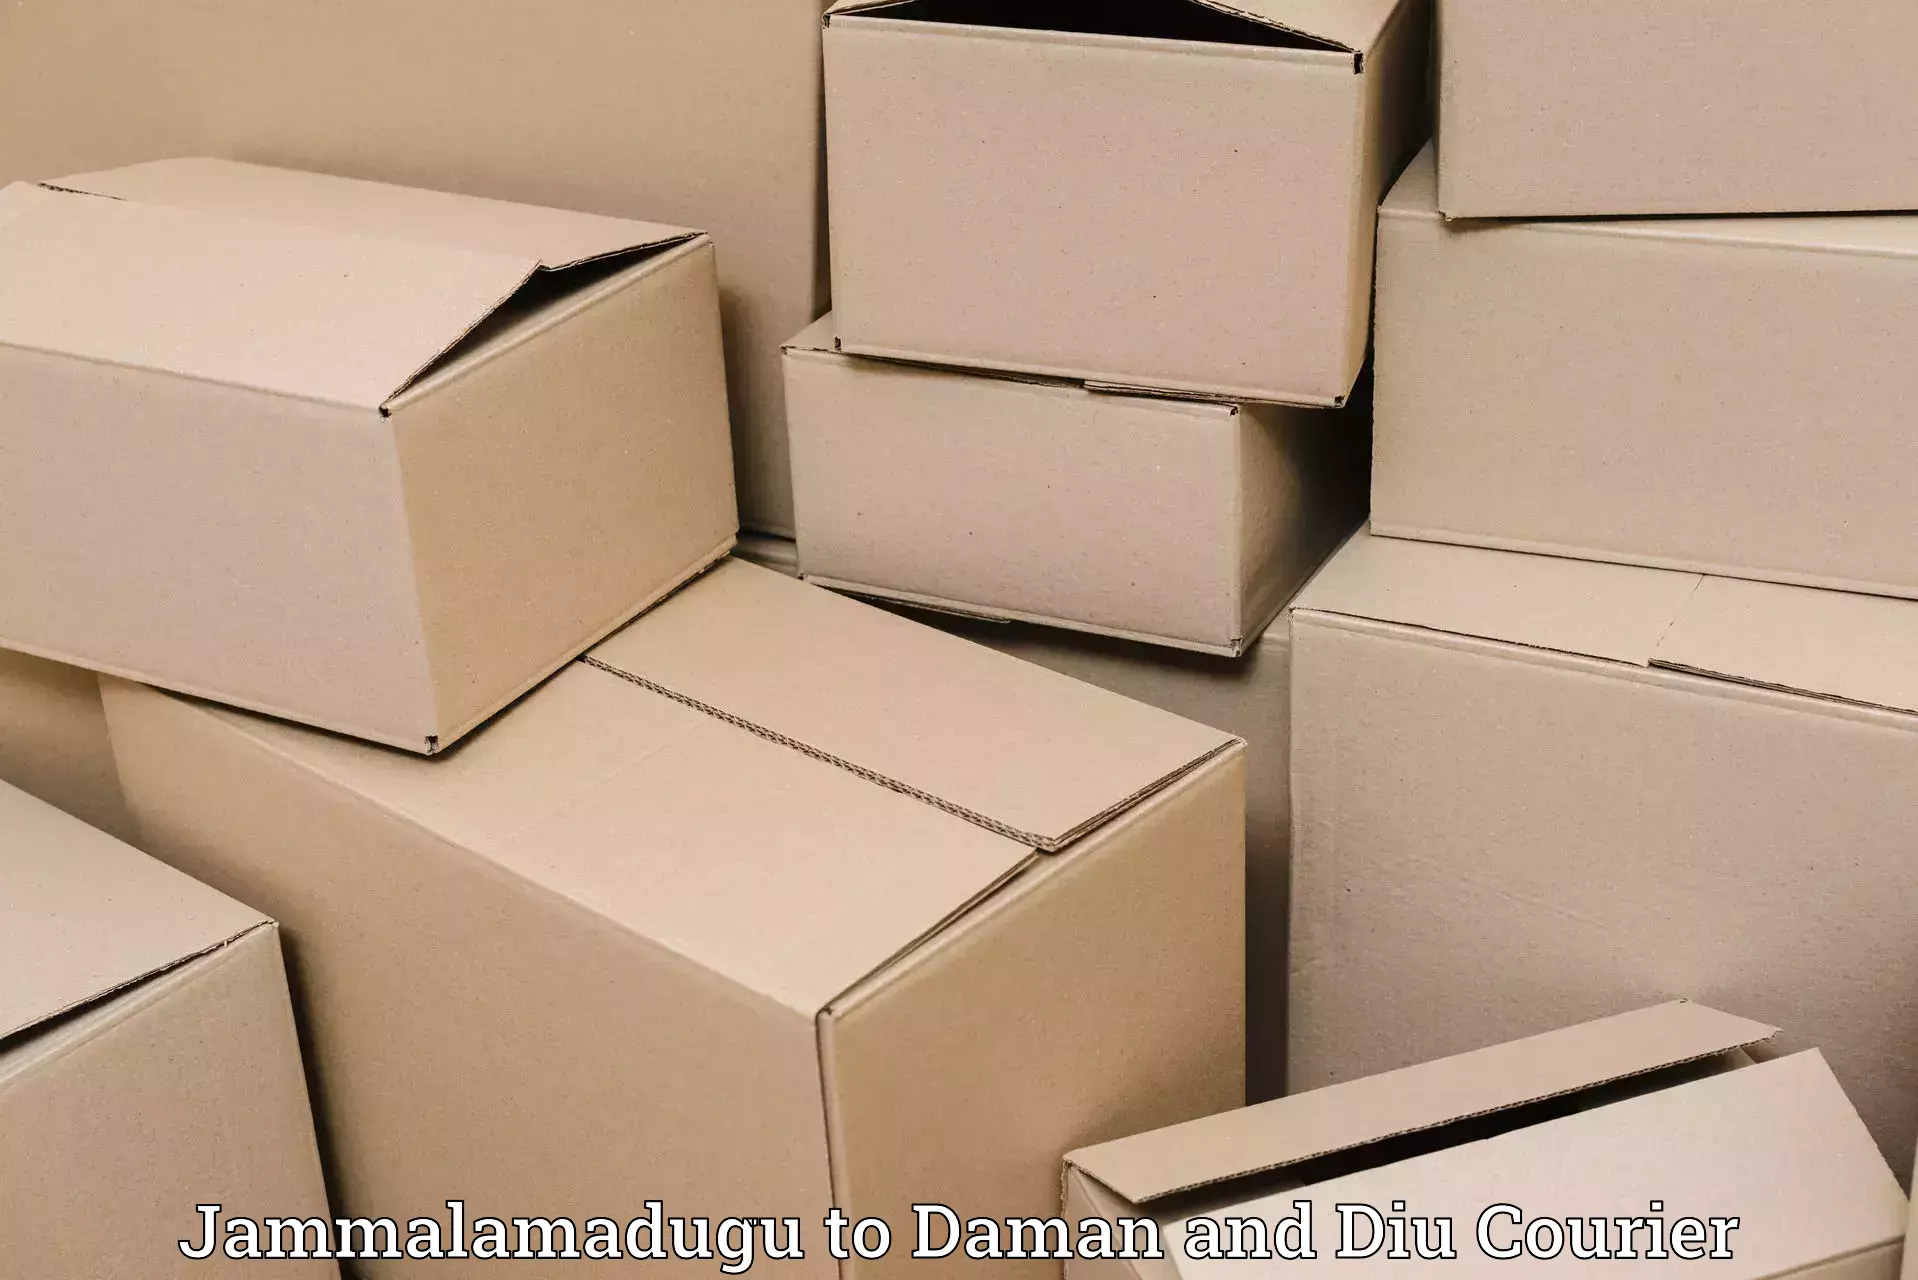 Courier service partnerships Jammalamadugu to Daman